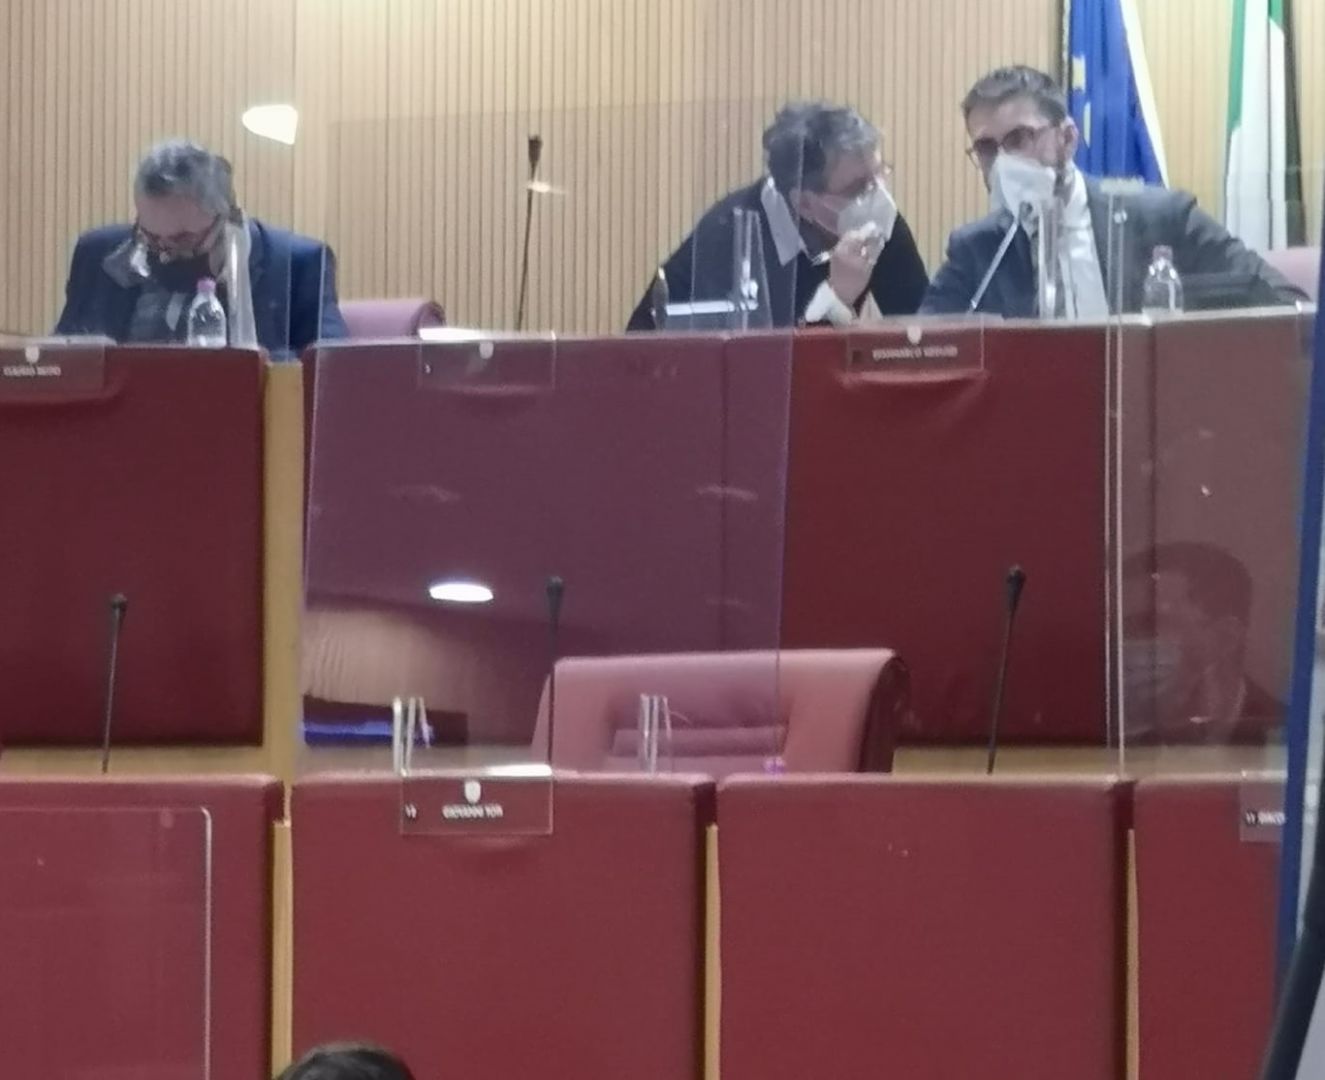 Toti assente in consiglio regionale, è polemica: "Una seduta inutile che costa 8 mila euro"